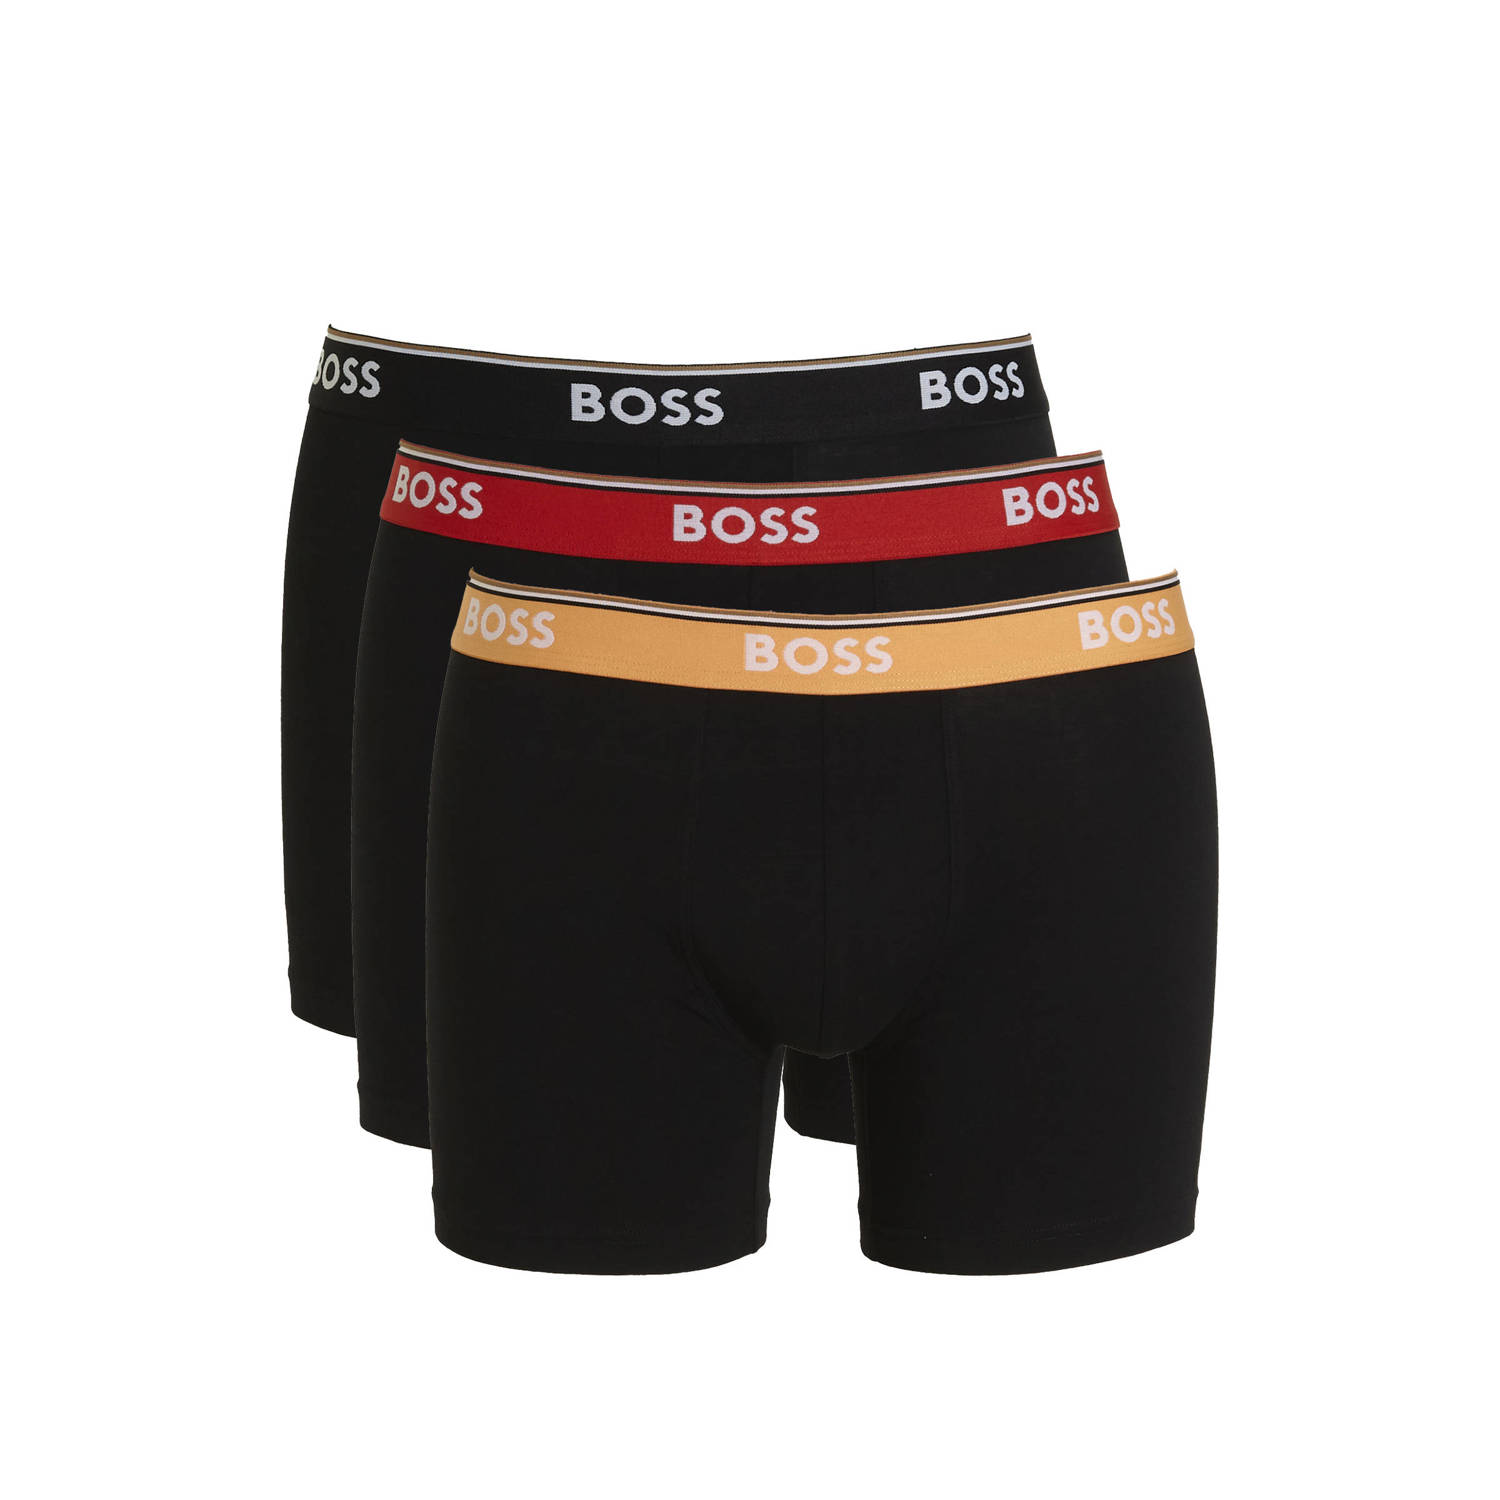 Boss Boxershort met elastische band met logo in een set van 3 stuks